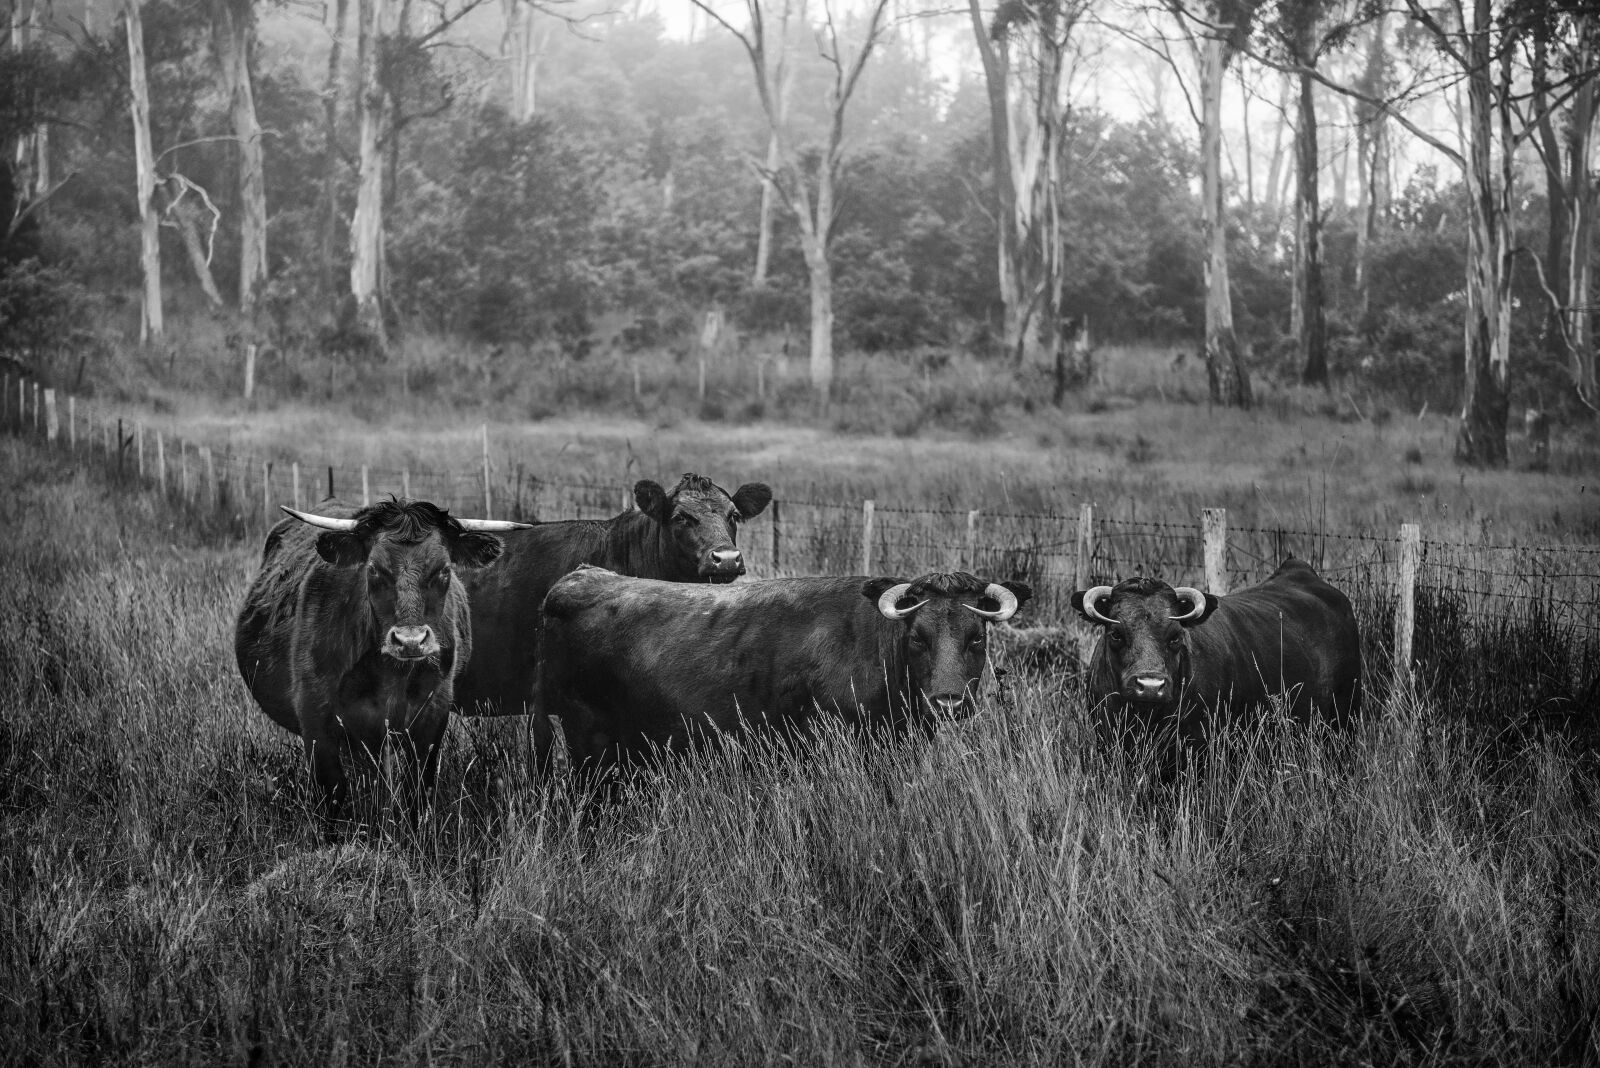 Nikon AF-S Nikkor 24-70mm F2.8G ED sample photo. Agriculture, animal, black, and photography